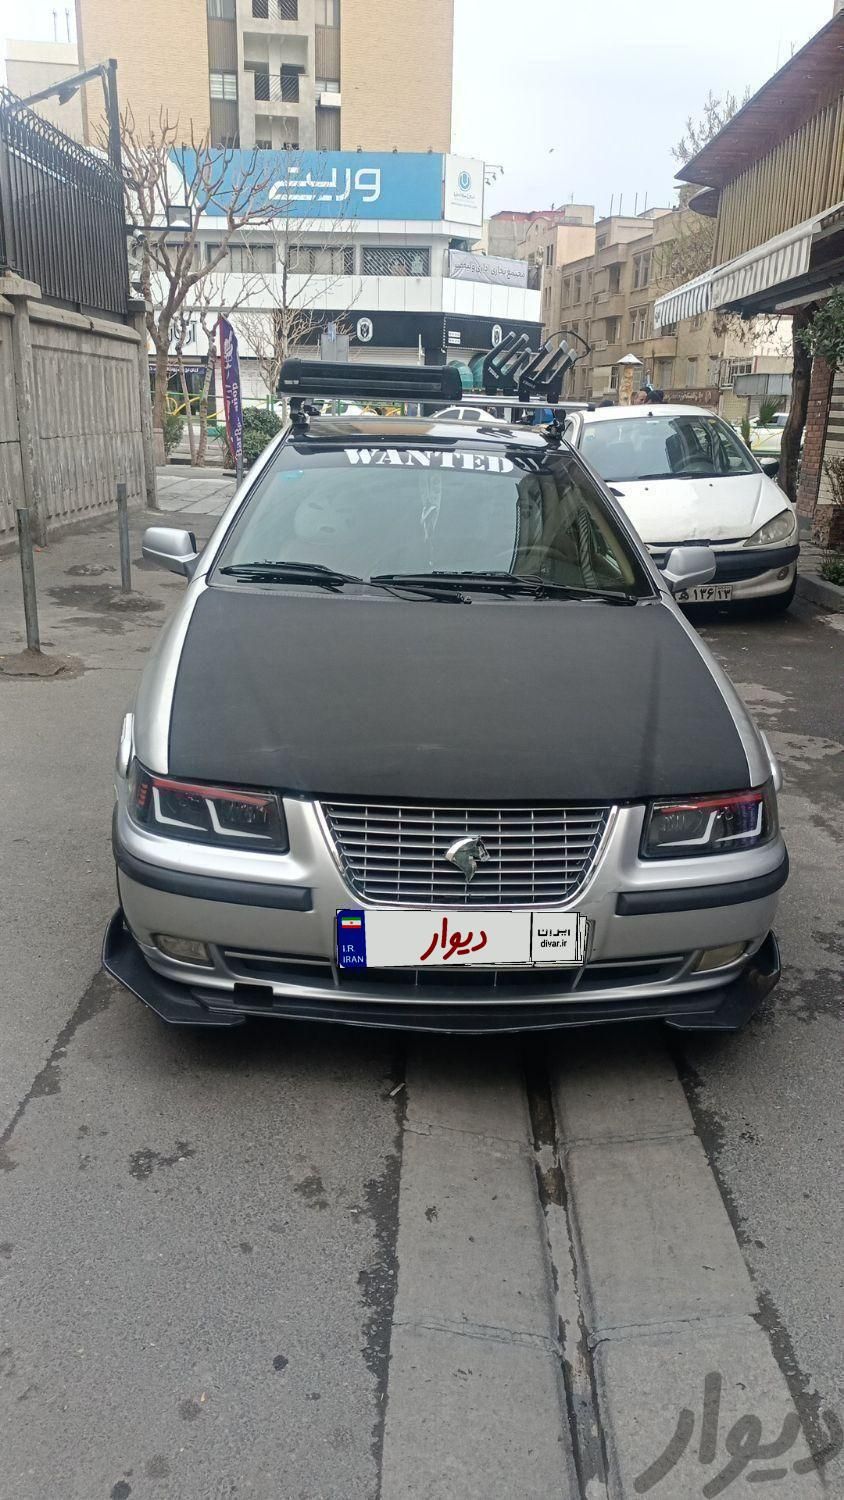 سمند X7 بنزینی، مدل ۱۳۸۲|سواری و وانت|تهران, میدان ولیعصر|دیوار